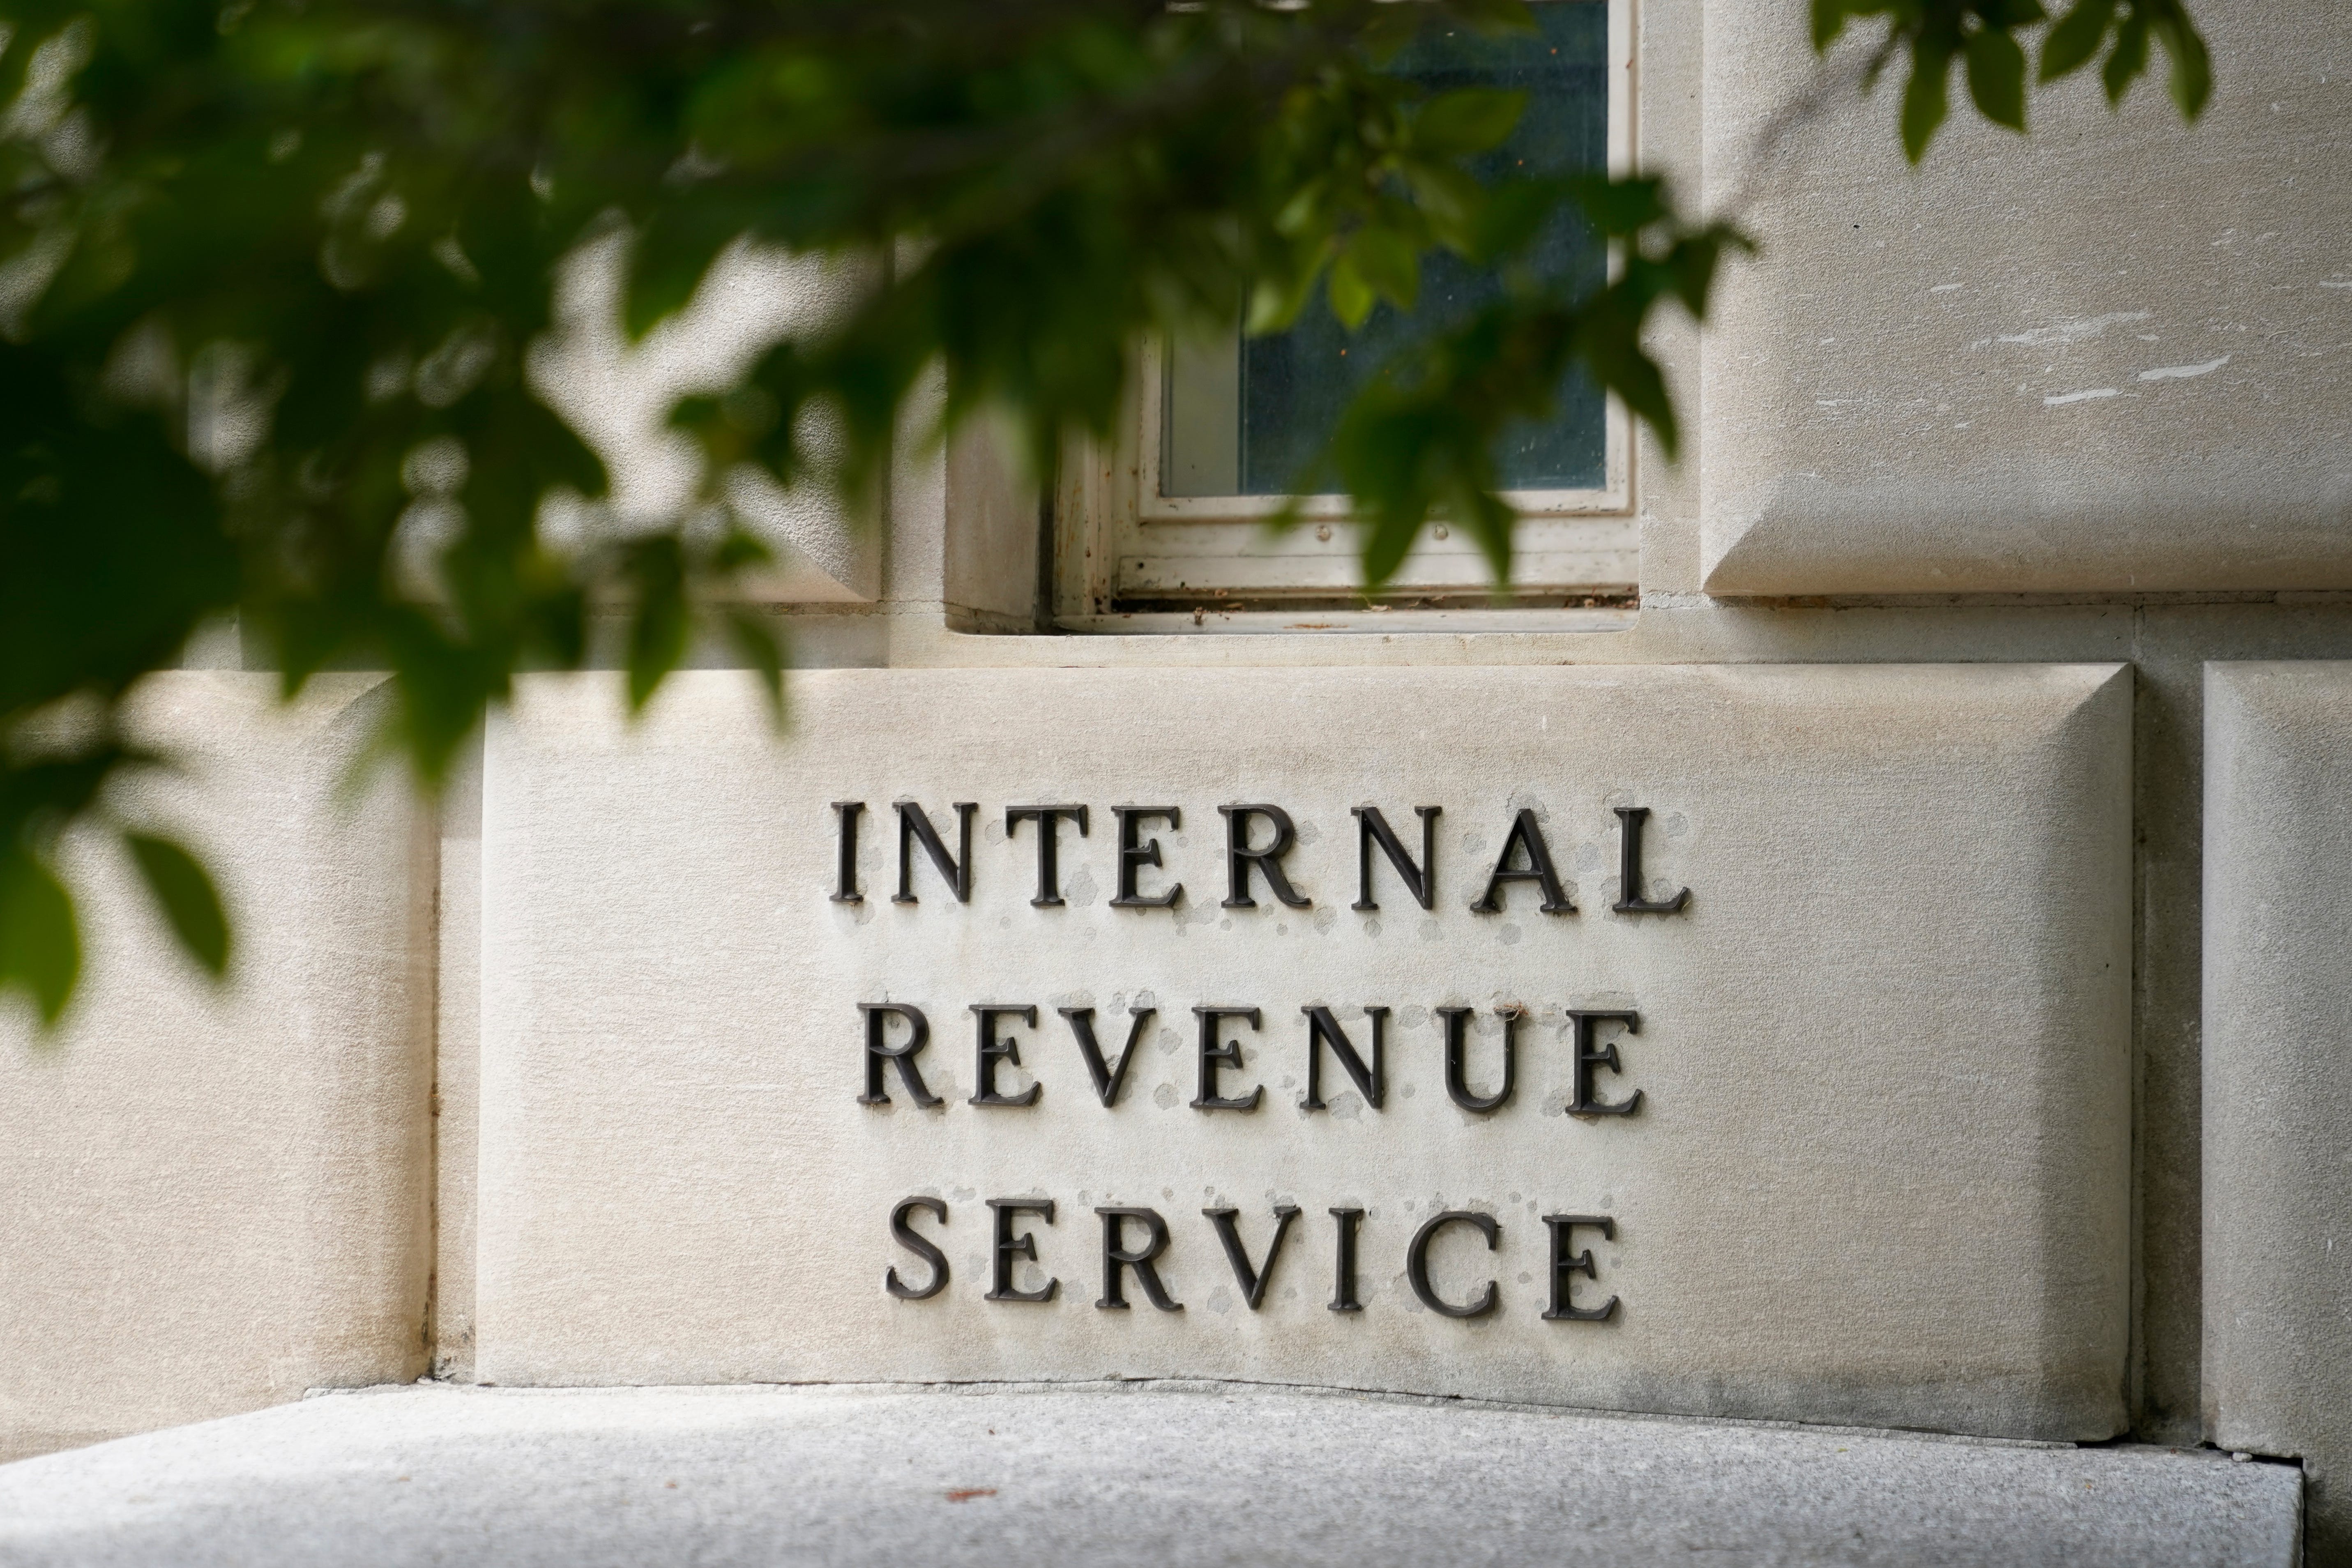 IRS memulai penyelidikan keamanan setelah ancaman terhadap pekerja